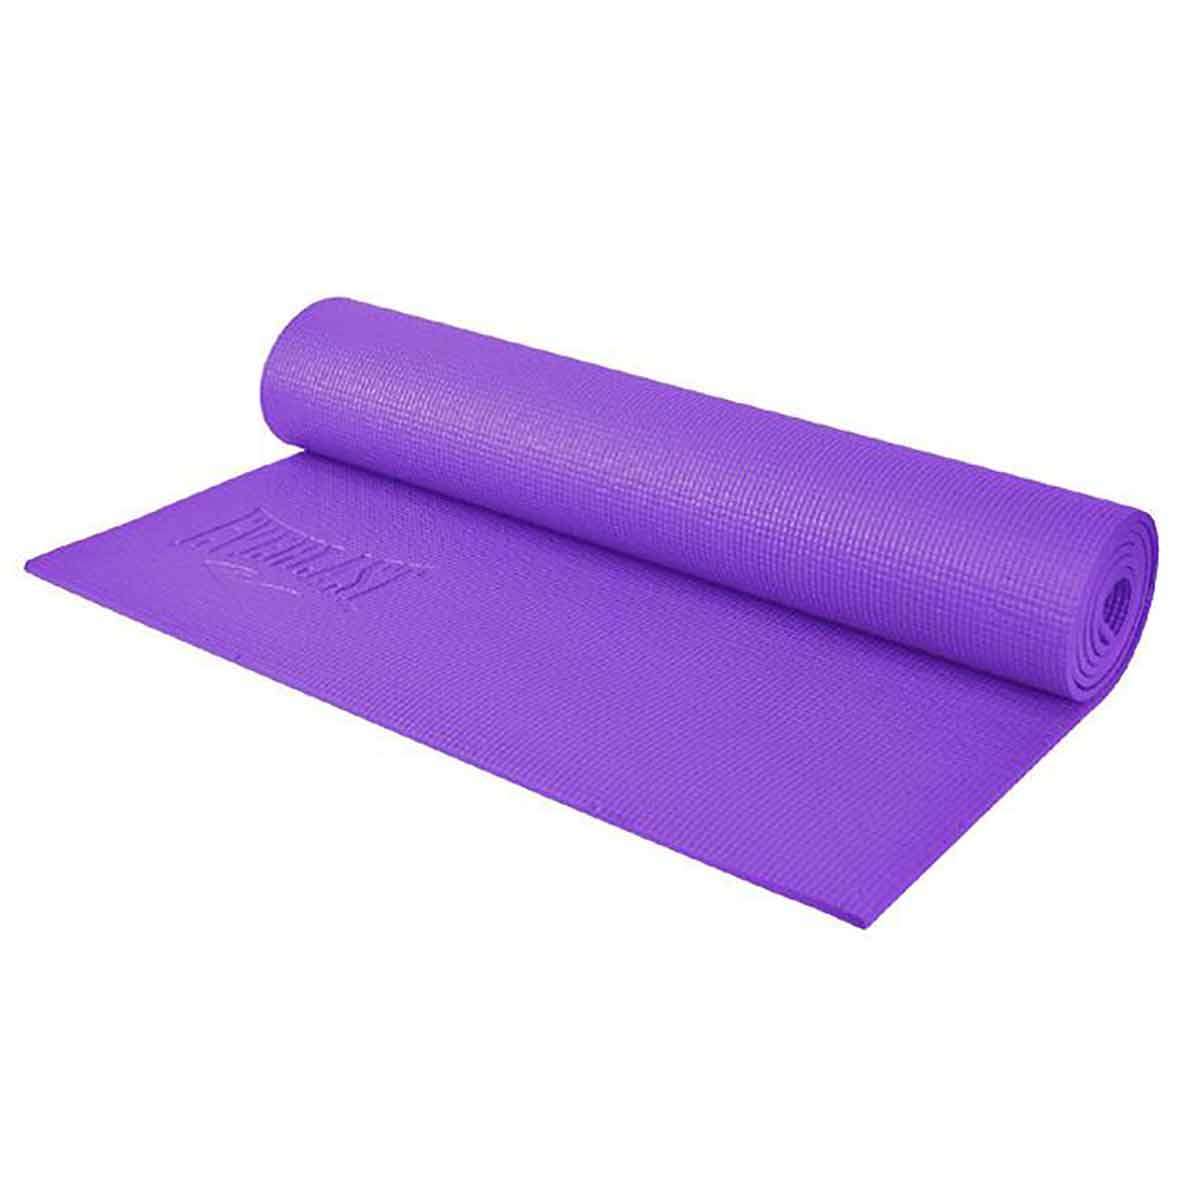 Toalla Yoga Antideslizante Violeta - silicona